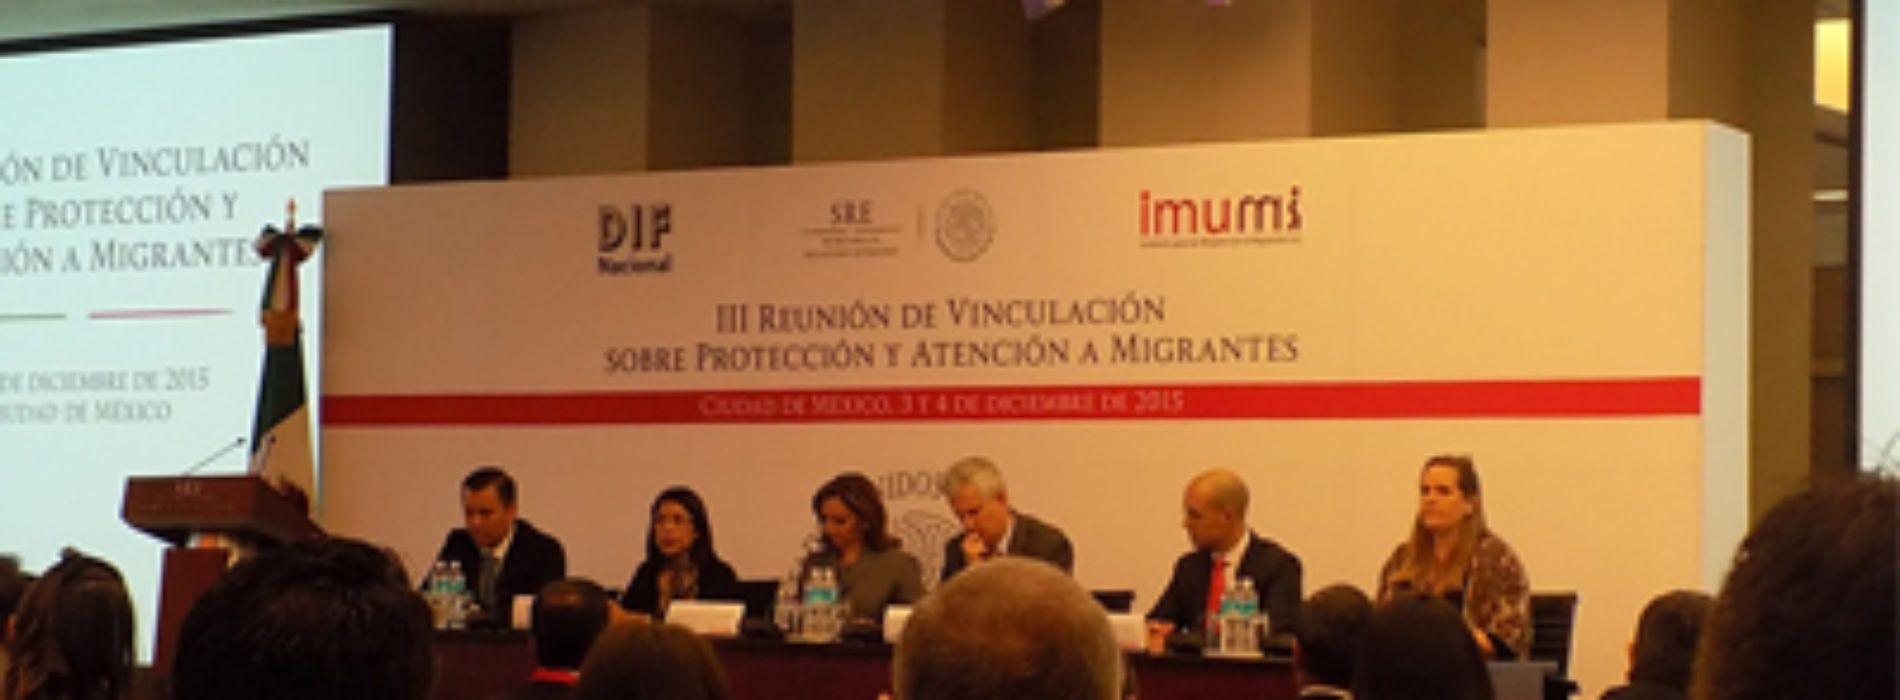 Participa IOAM en la III Reunión de Vinculación sobre Protección y Atención a Migrantes